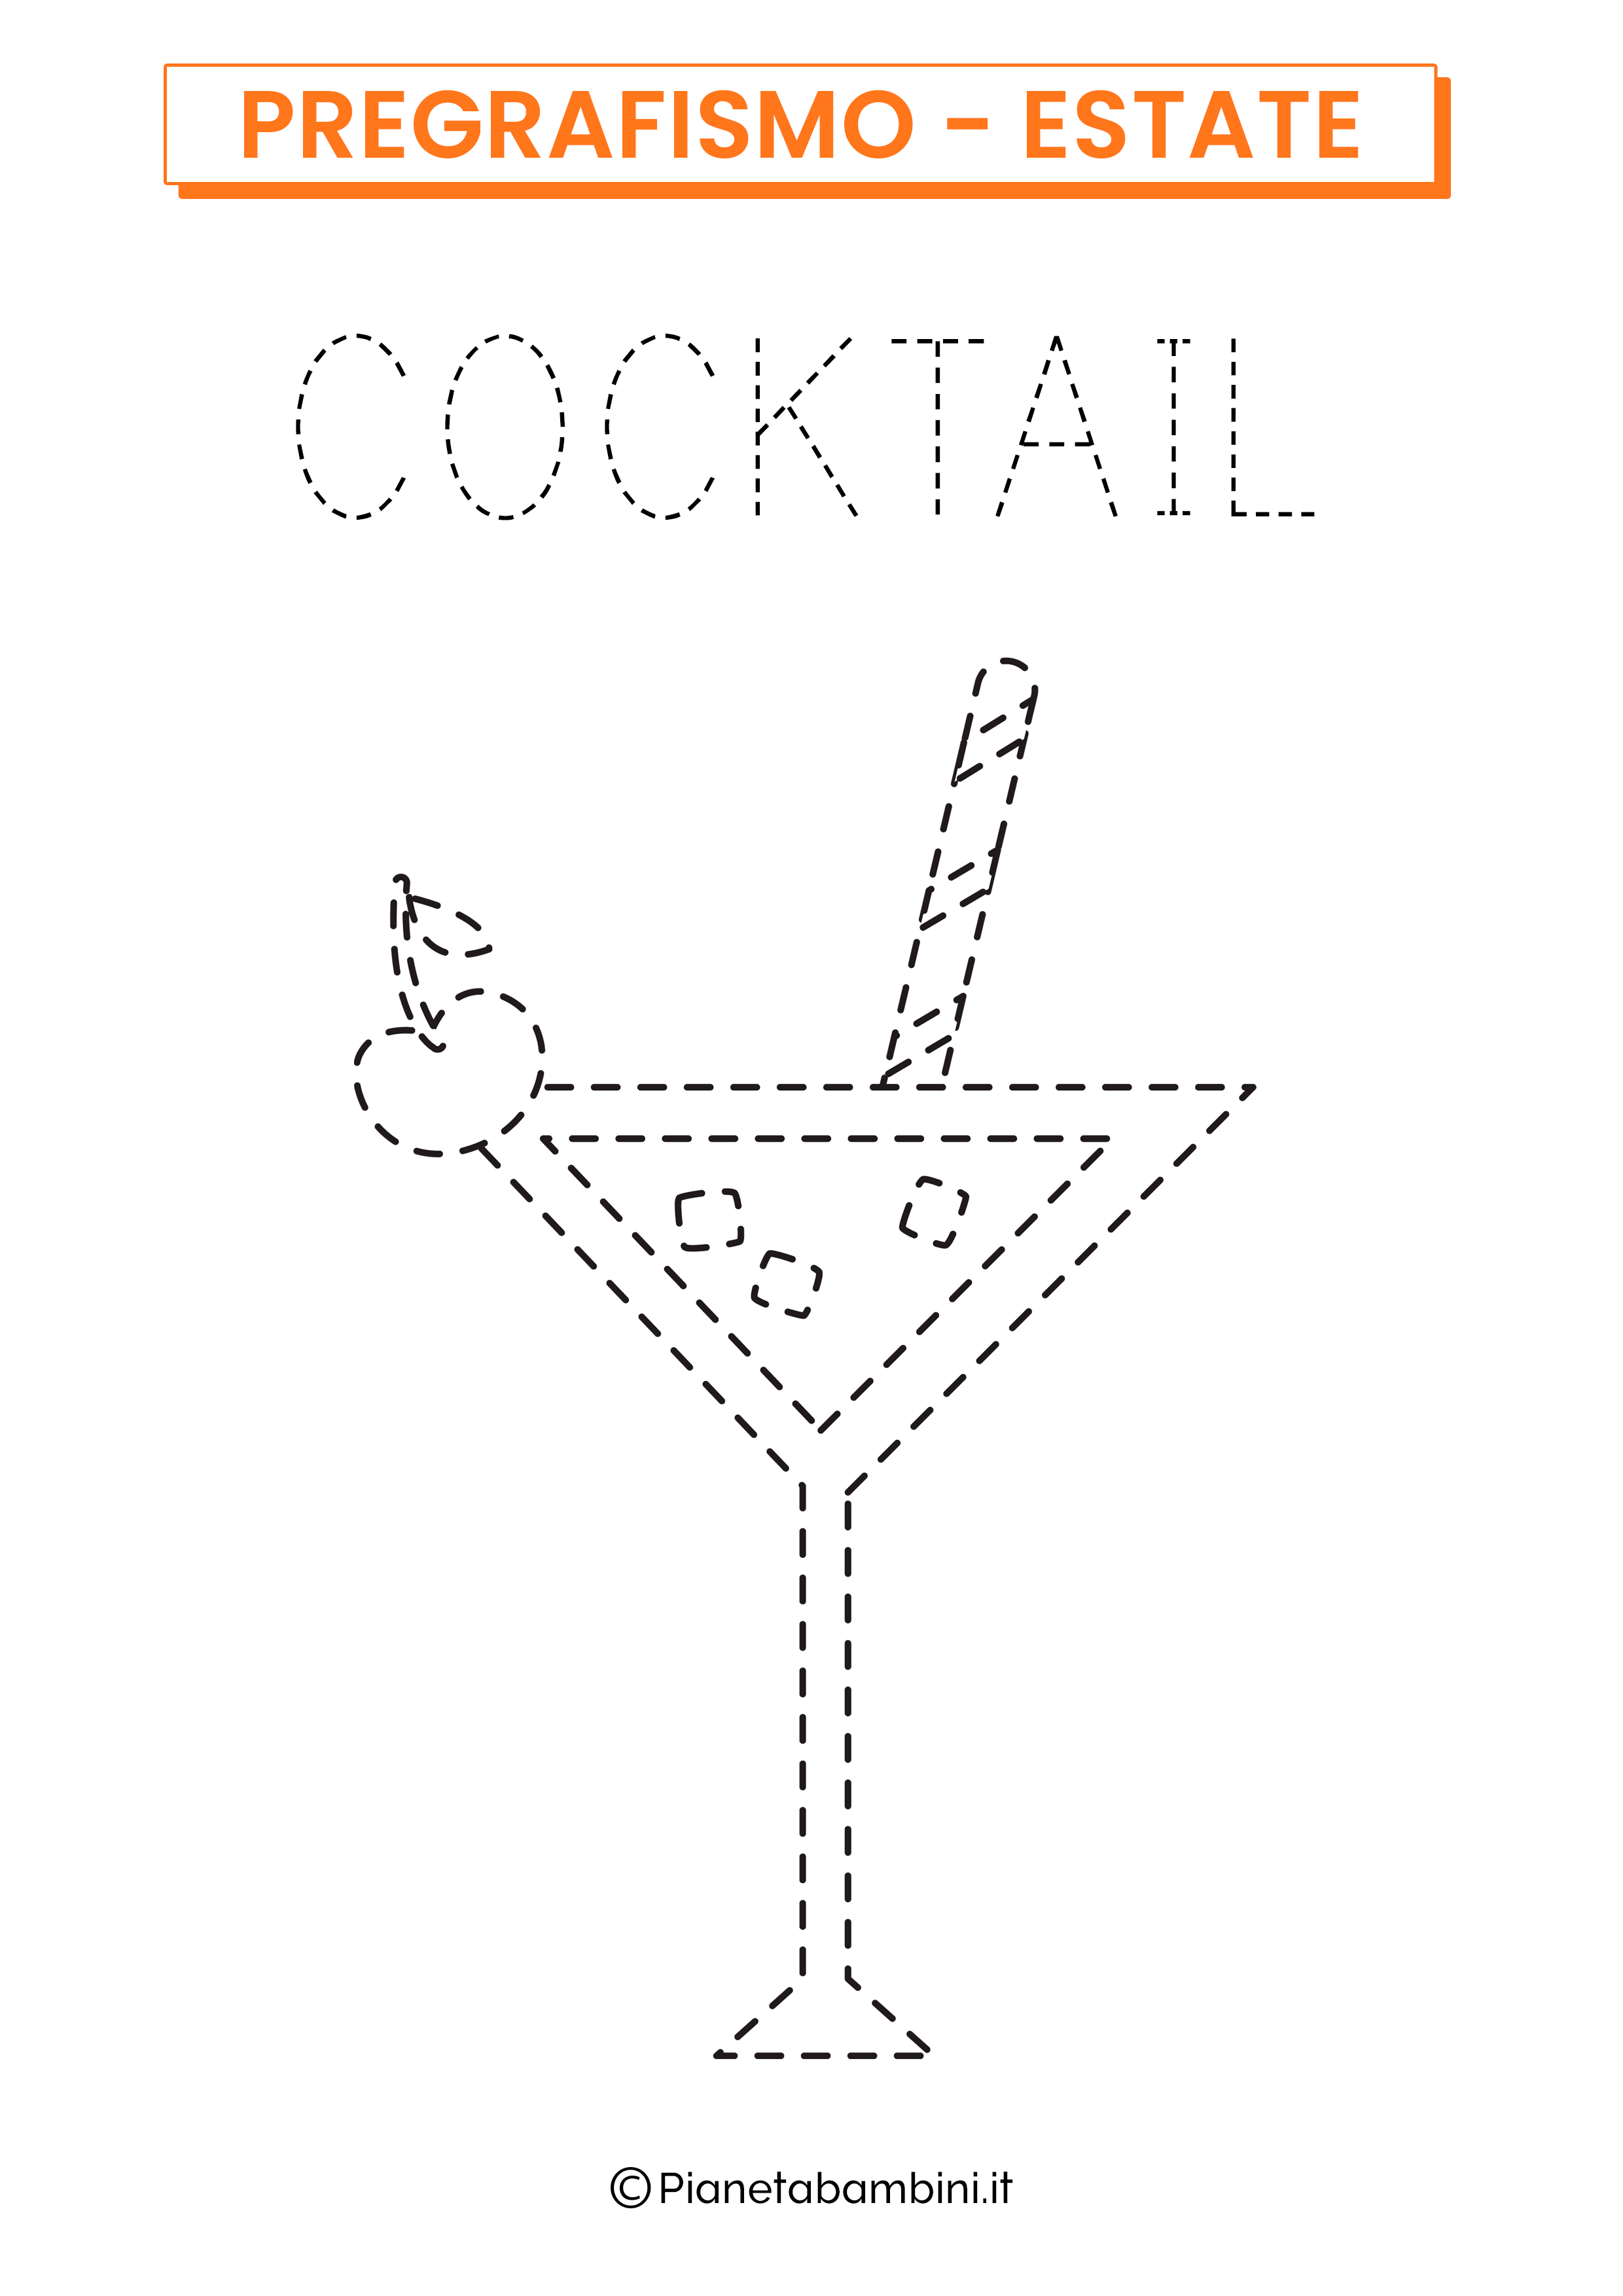 Scheda di pregrafismo sull'estate: il cocktail